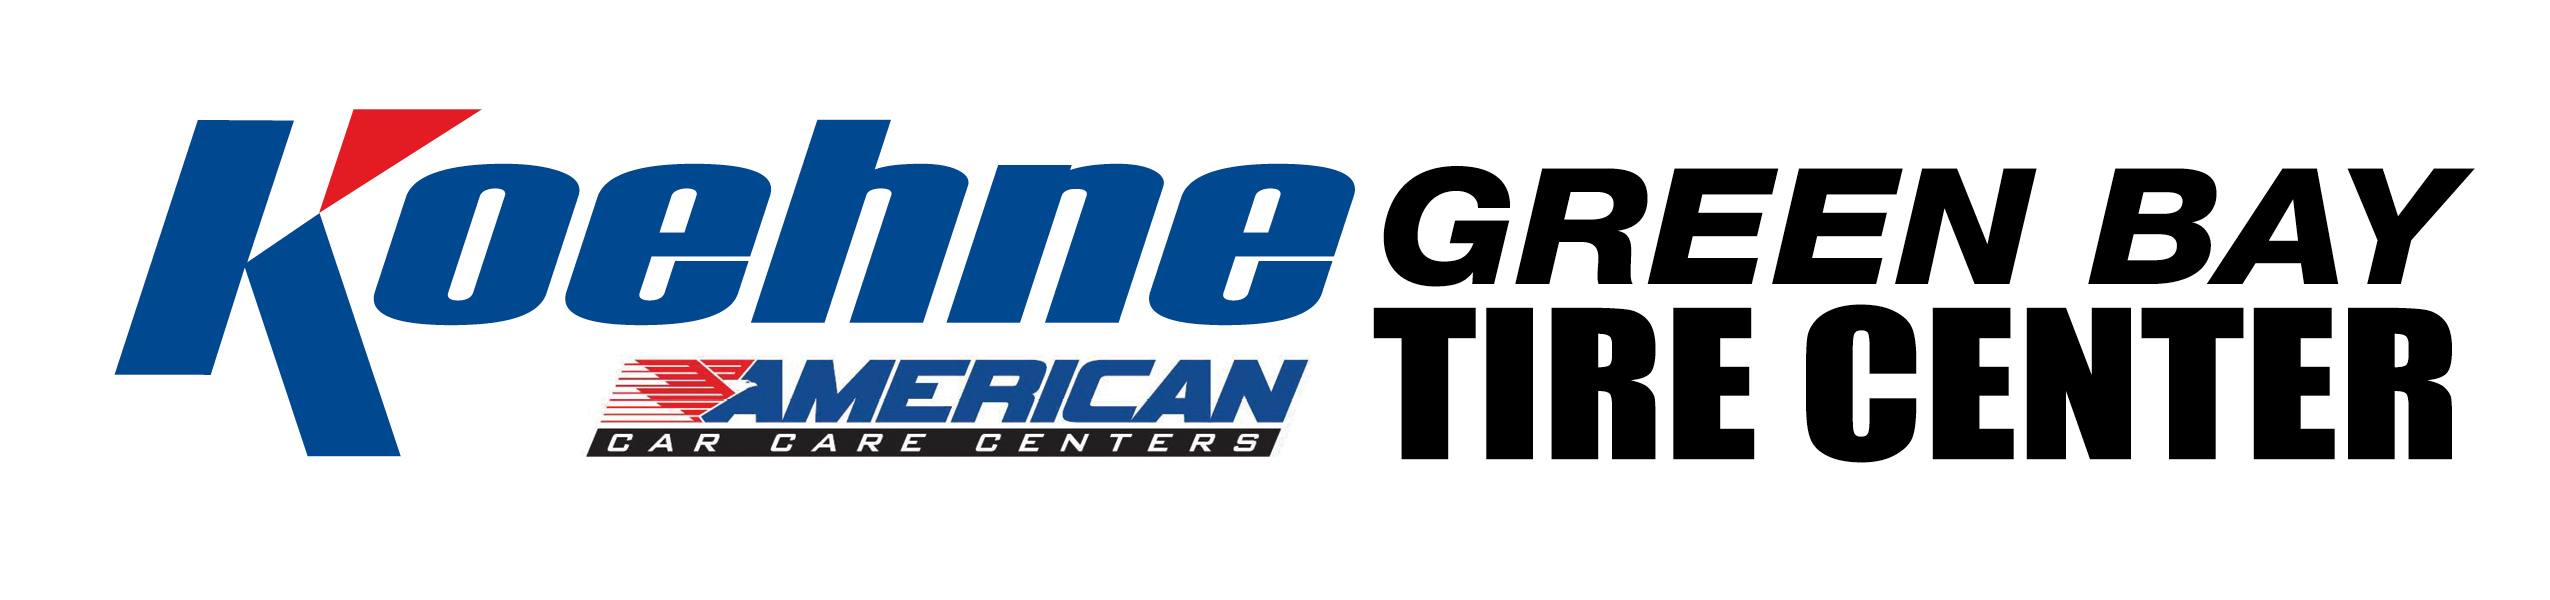 Green Bay Tire Center Logo